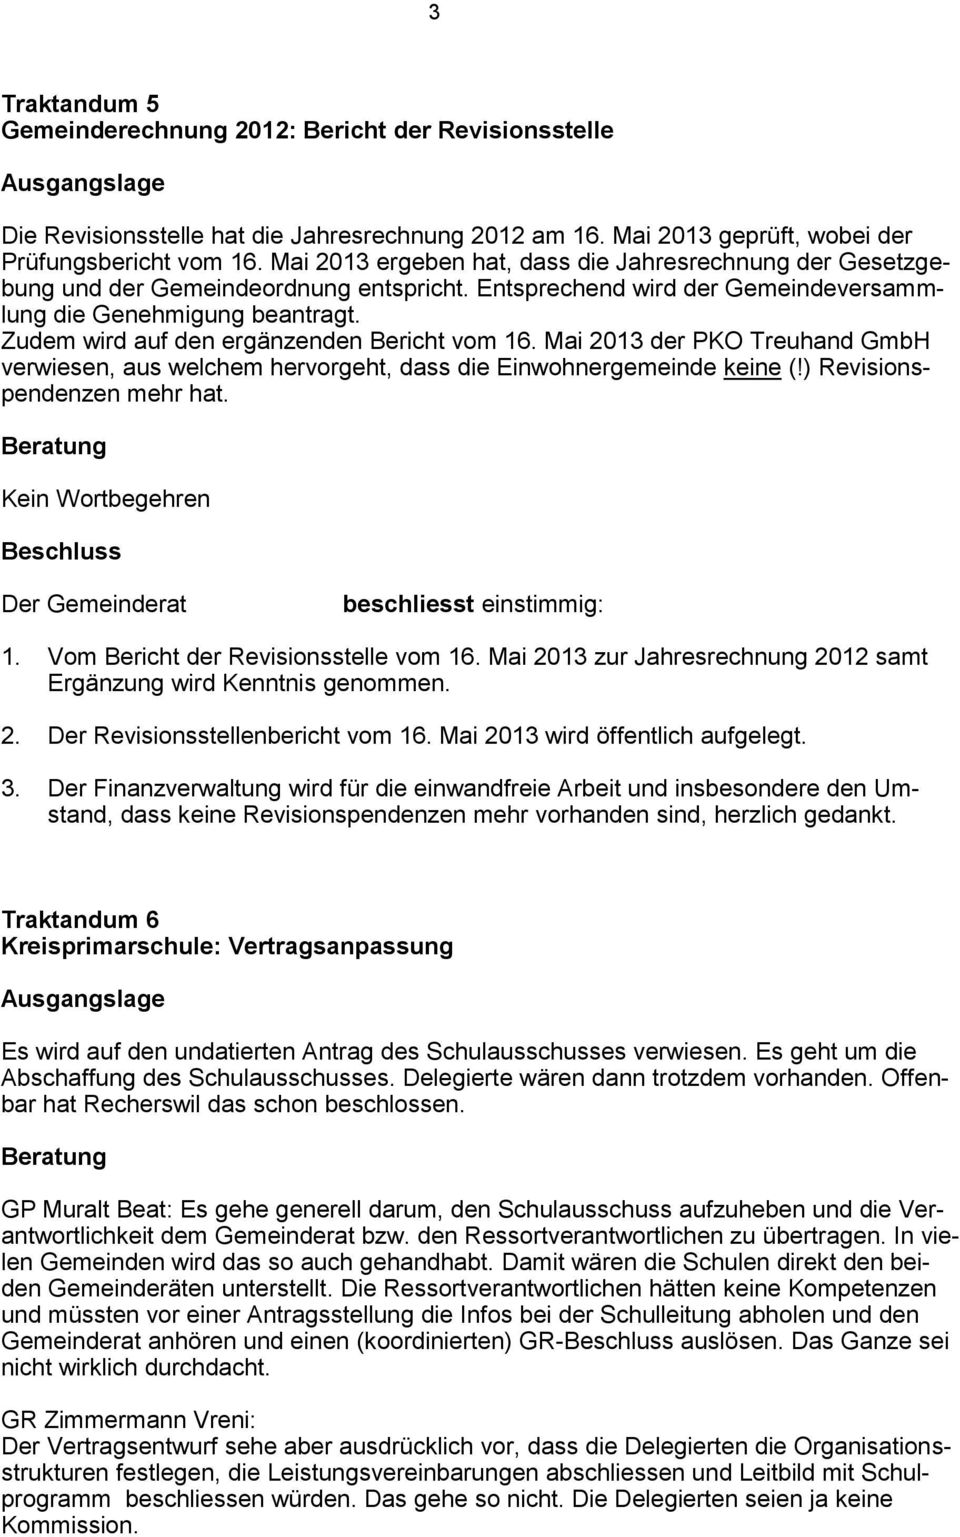 Zudem wird auf den ergänzenden Bericht vom 16. Mai 2013 der PKO Treuhand GmbH verwiesen, aus welchem hervorgeht, dass die Einwohnergemeinde keine (!) Revisionspendenzen mehr hat. Kein Wortbegehren 1.